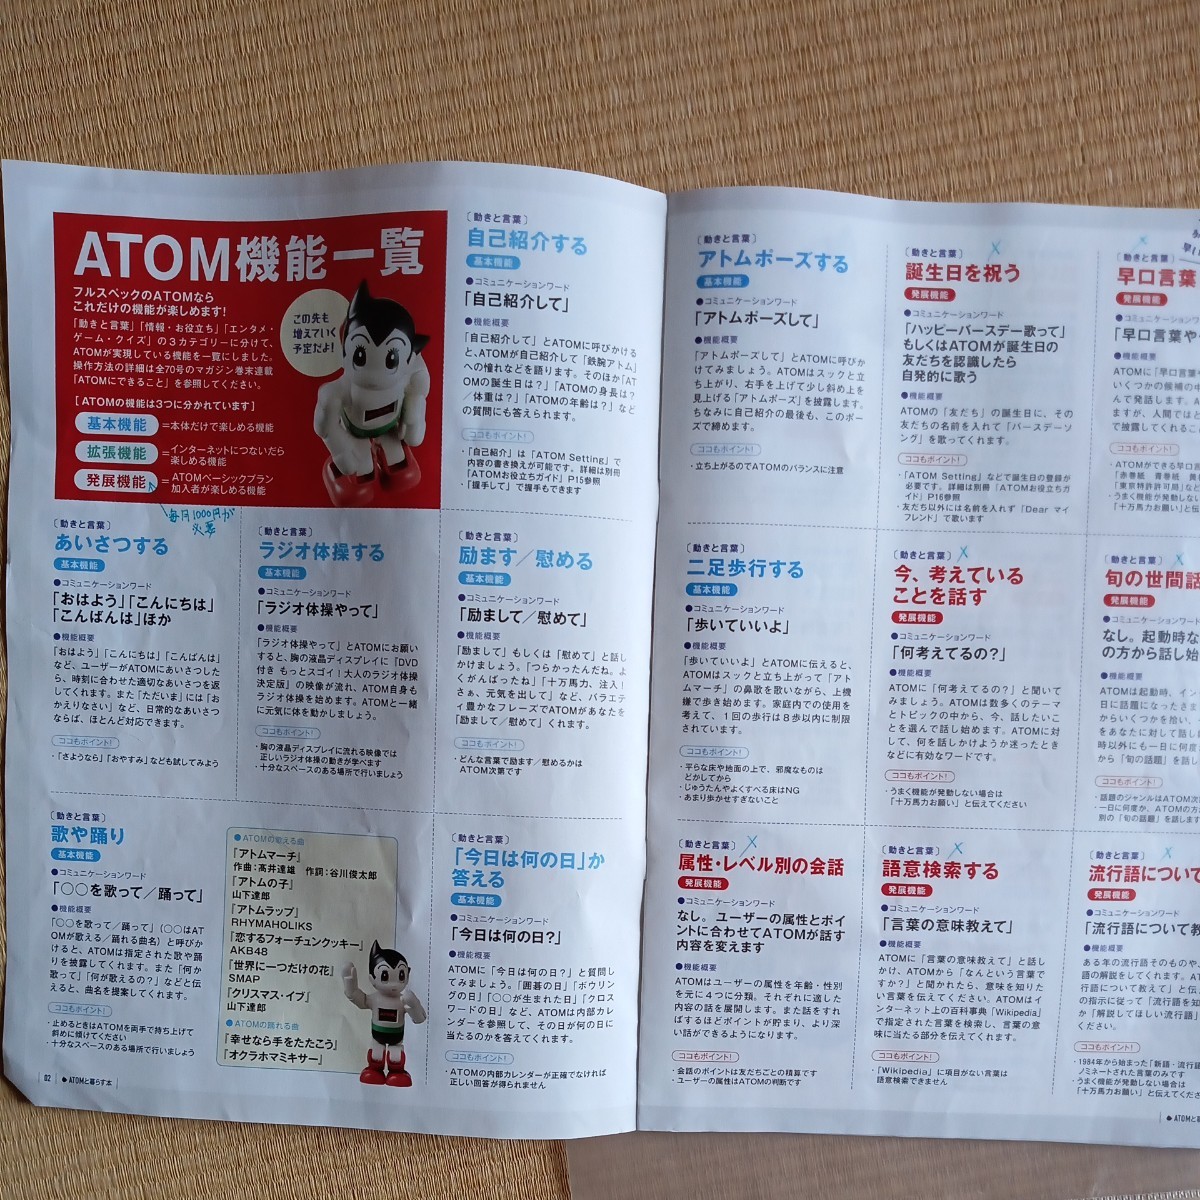  Chogokin Astro Boy . произведение .. конечный продукт .. фирма.2 год ..., готовый сделал. распределение бесплатная доставка. выставляющая сторона плата..